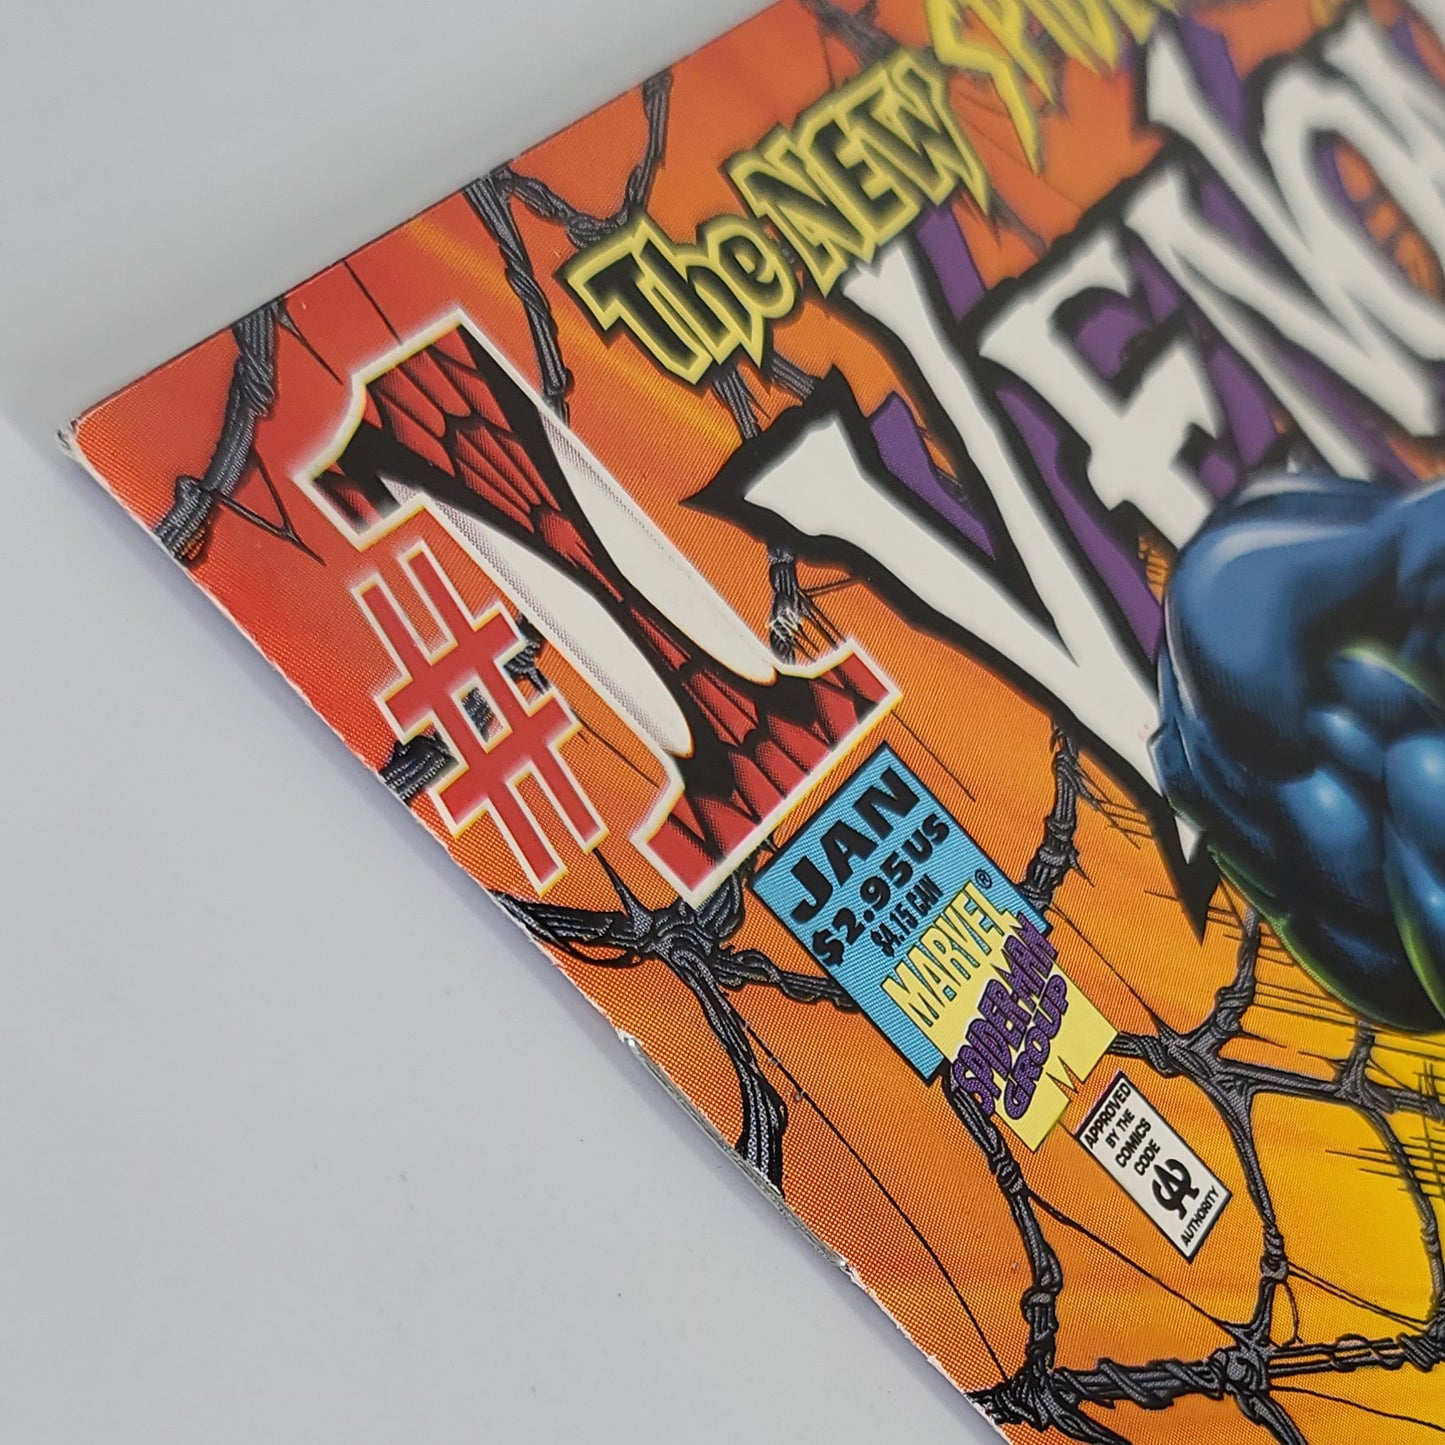 Venom: Along Came A Spider #1 (1996)